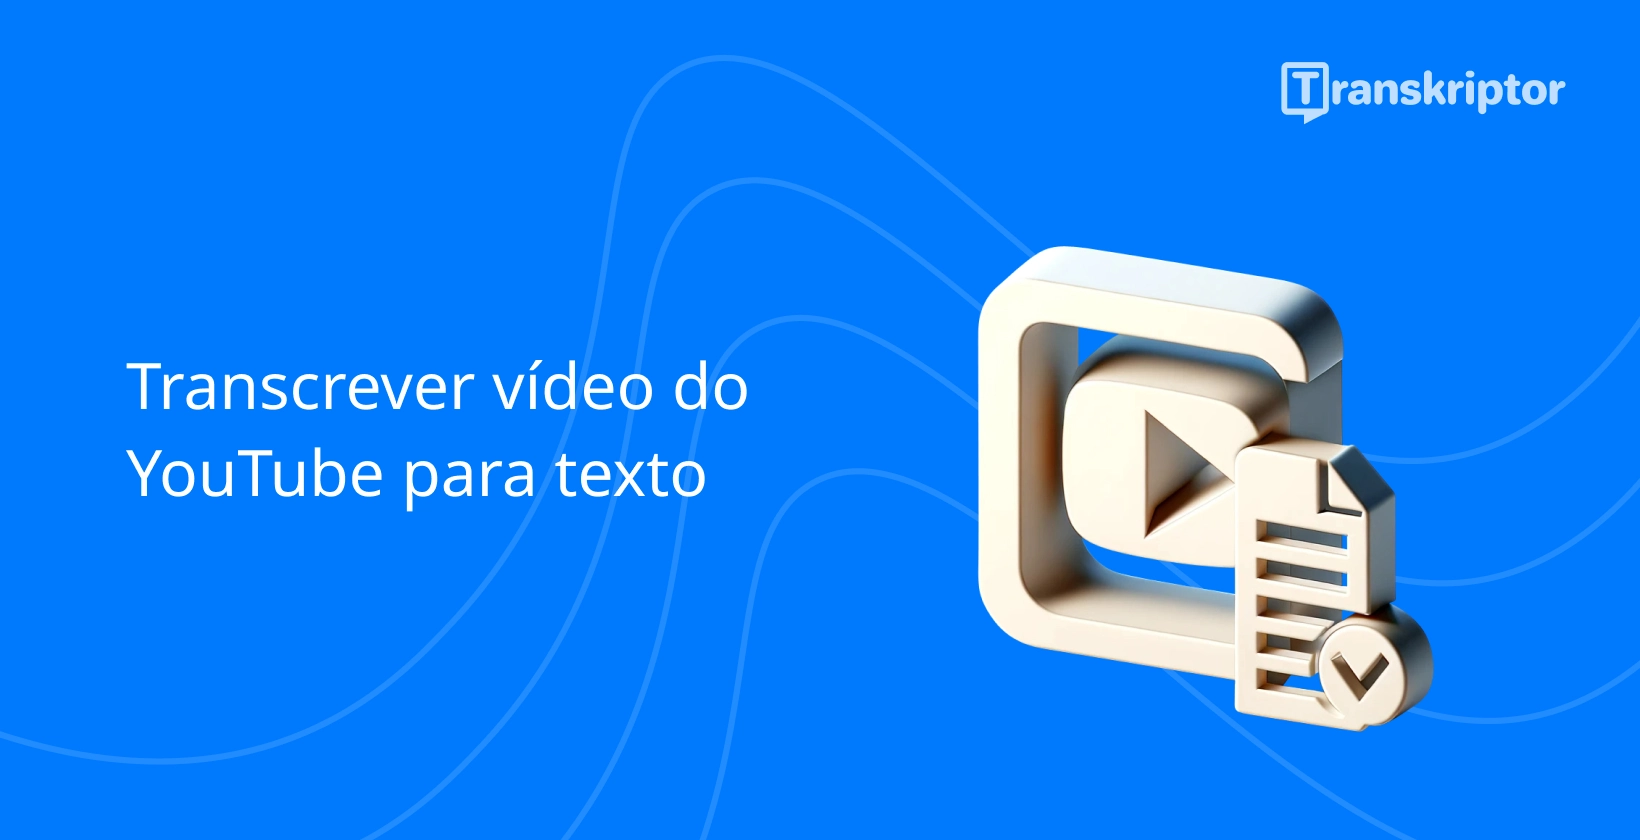 Ícone de serviços de transcrição com botão de reprodução e documento simbolizando YouTube conversão de vídeo em texto.